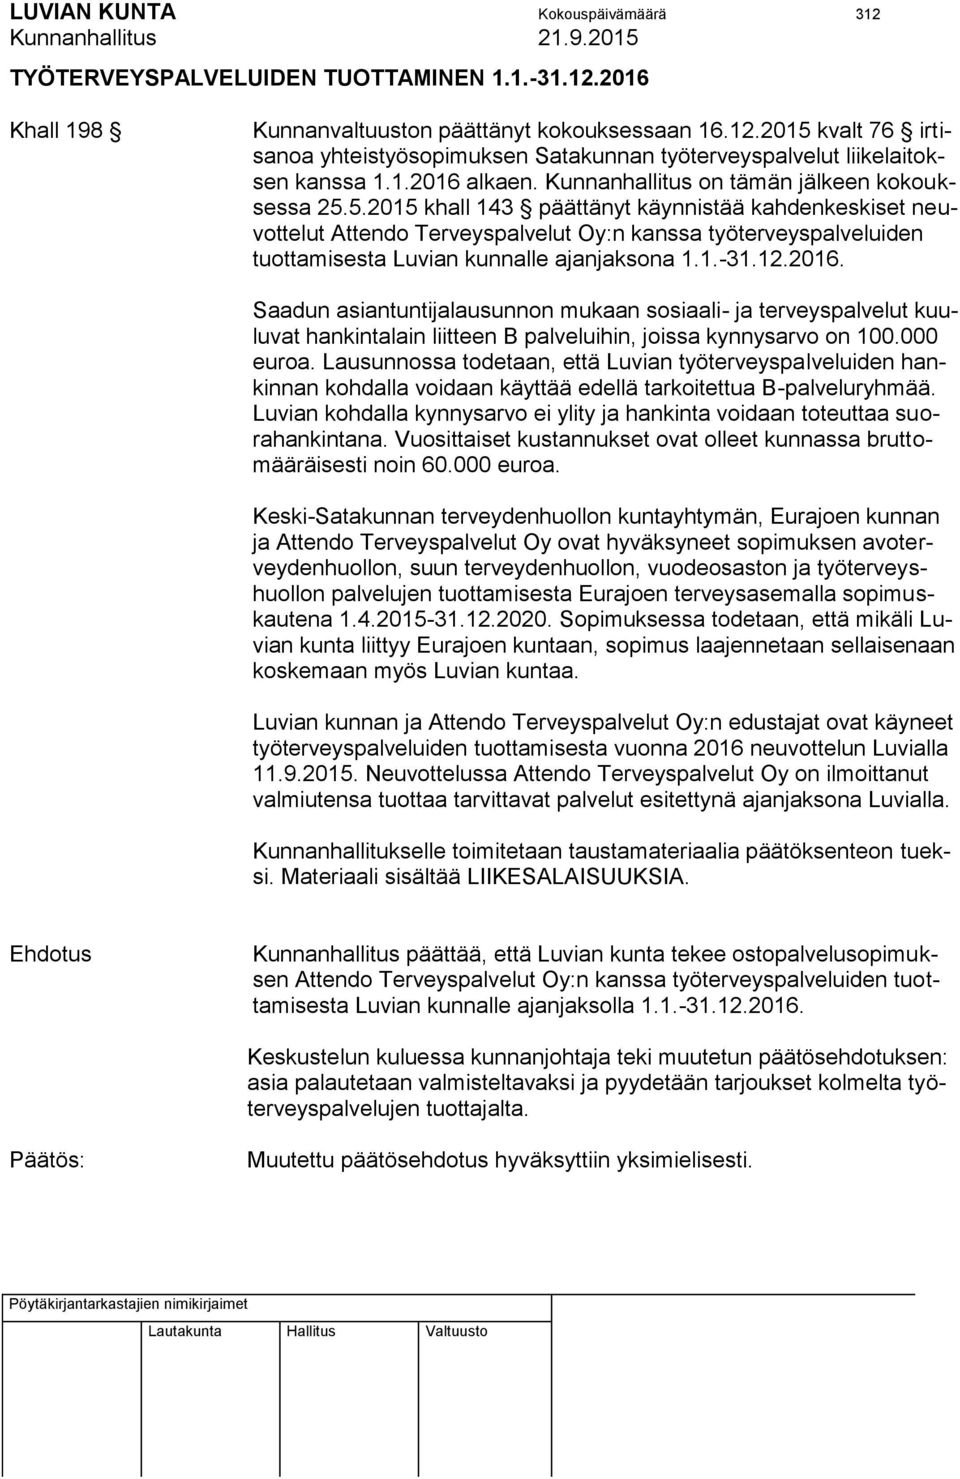 5.2015 khall 143 päättänyt käynnistää kahdenkeskiset neuvottelut Attendo Terveyspalvelut Oy:n kanssa työterveyspalveluiden tuottamisesta Luvian kunnalle ajanjaksona 1.1.-31.12.2016.